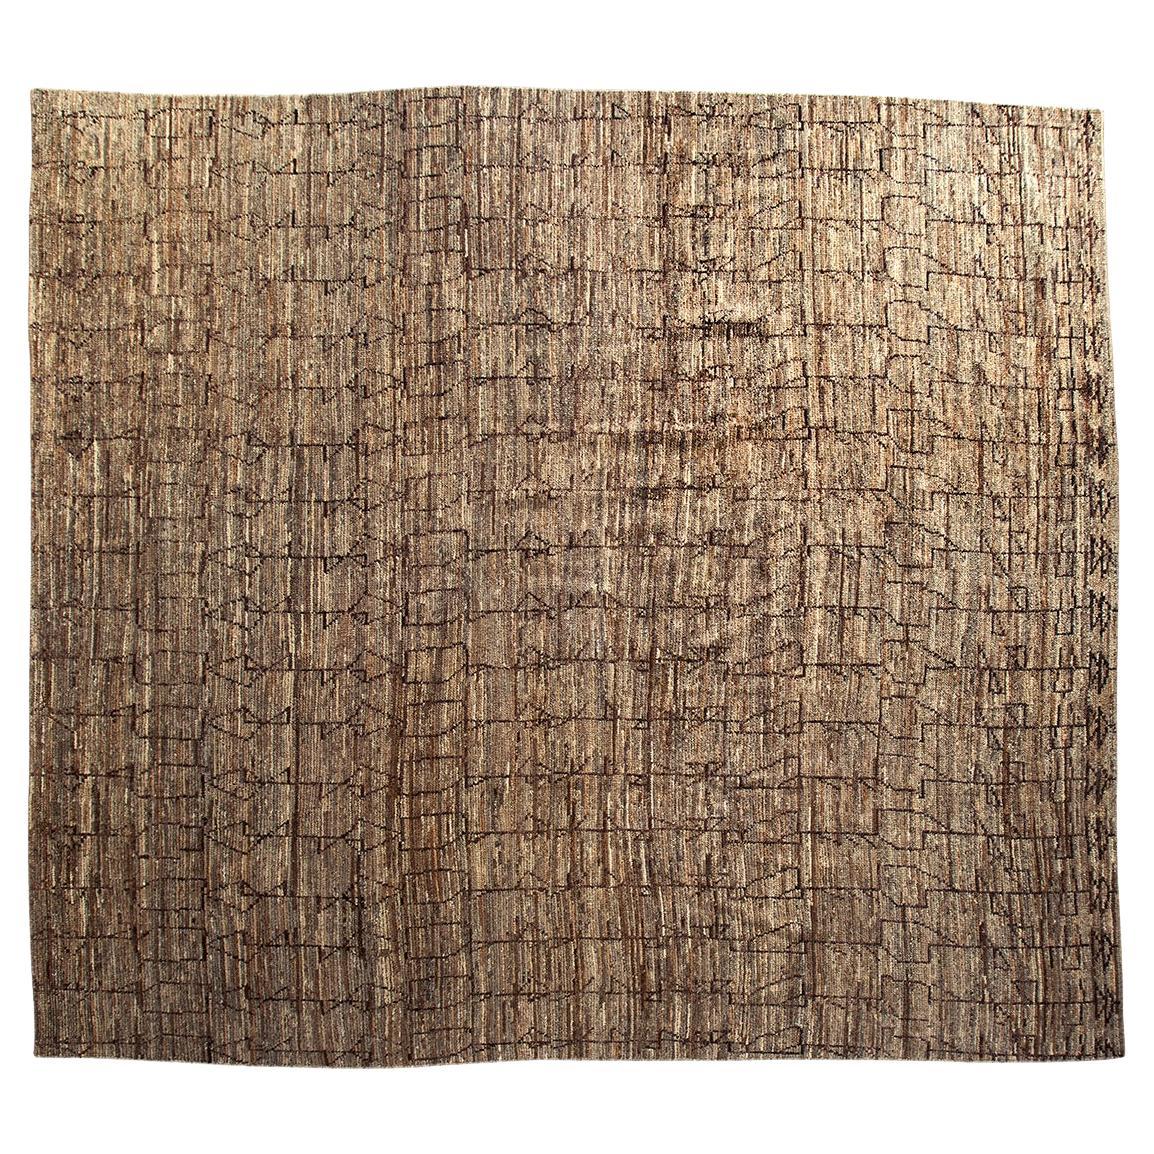 Turkish Tulu Wool Rug in Brown and Taupe Geometric Moroccan Design